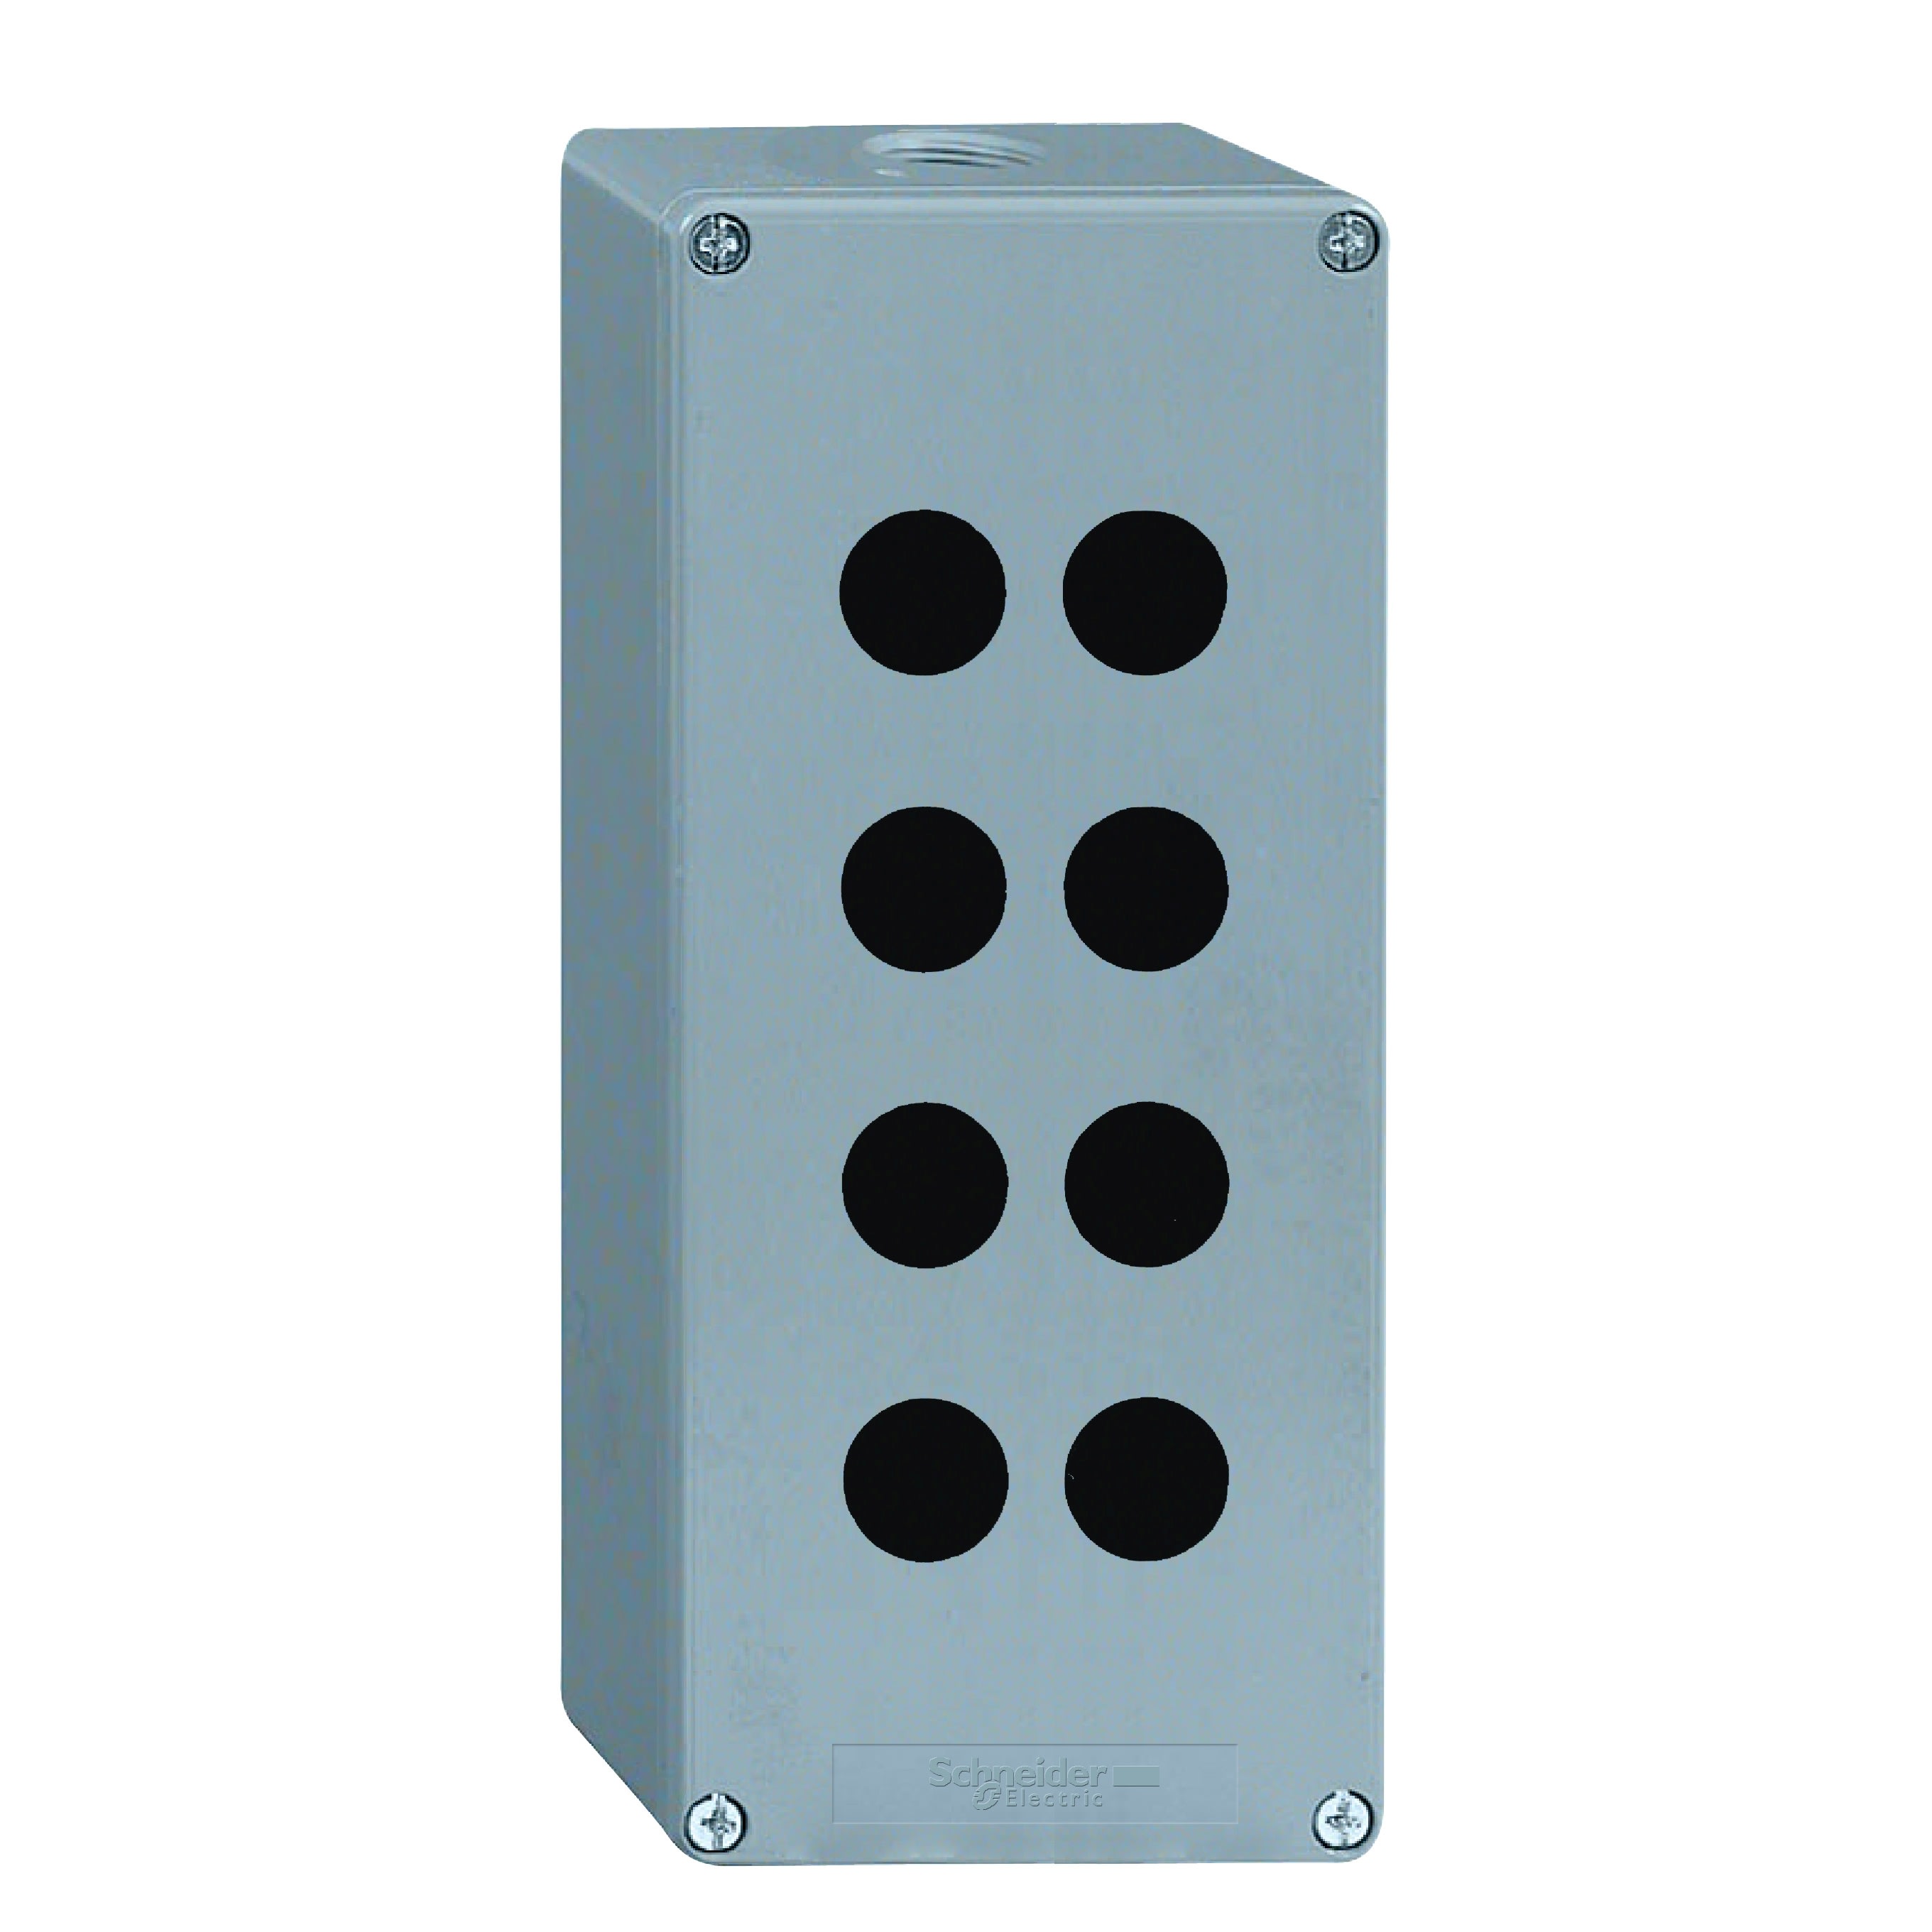 Schneider Electric - Harmony XAPM - boite a boutons vide - metallique - 8 percages en 2 colonnes